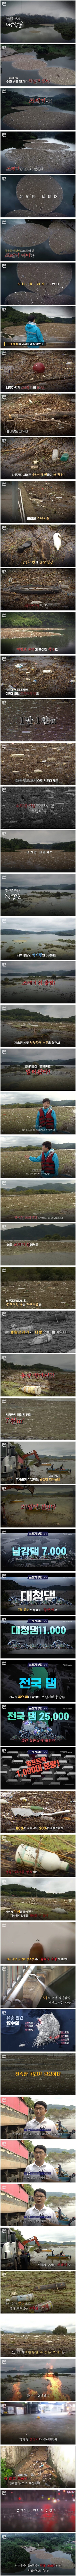  장마와 폭우 때문에 생긴 거대한 쓰레기섬